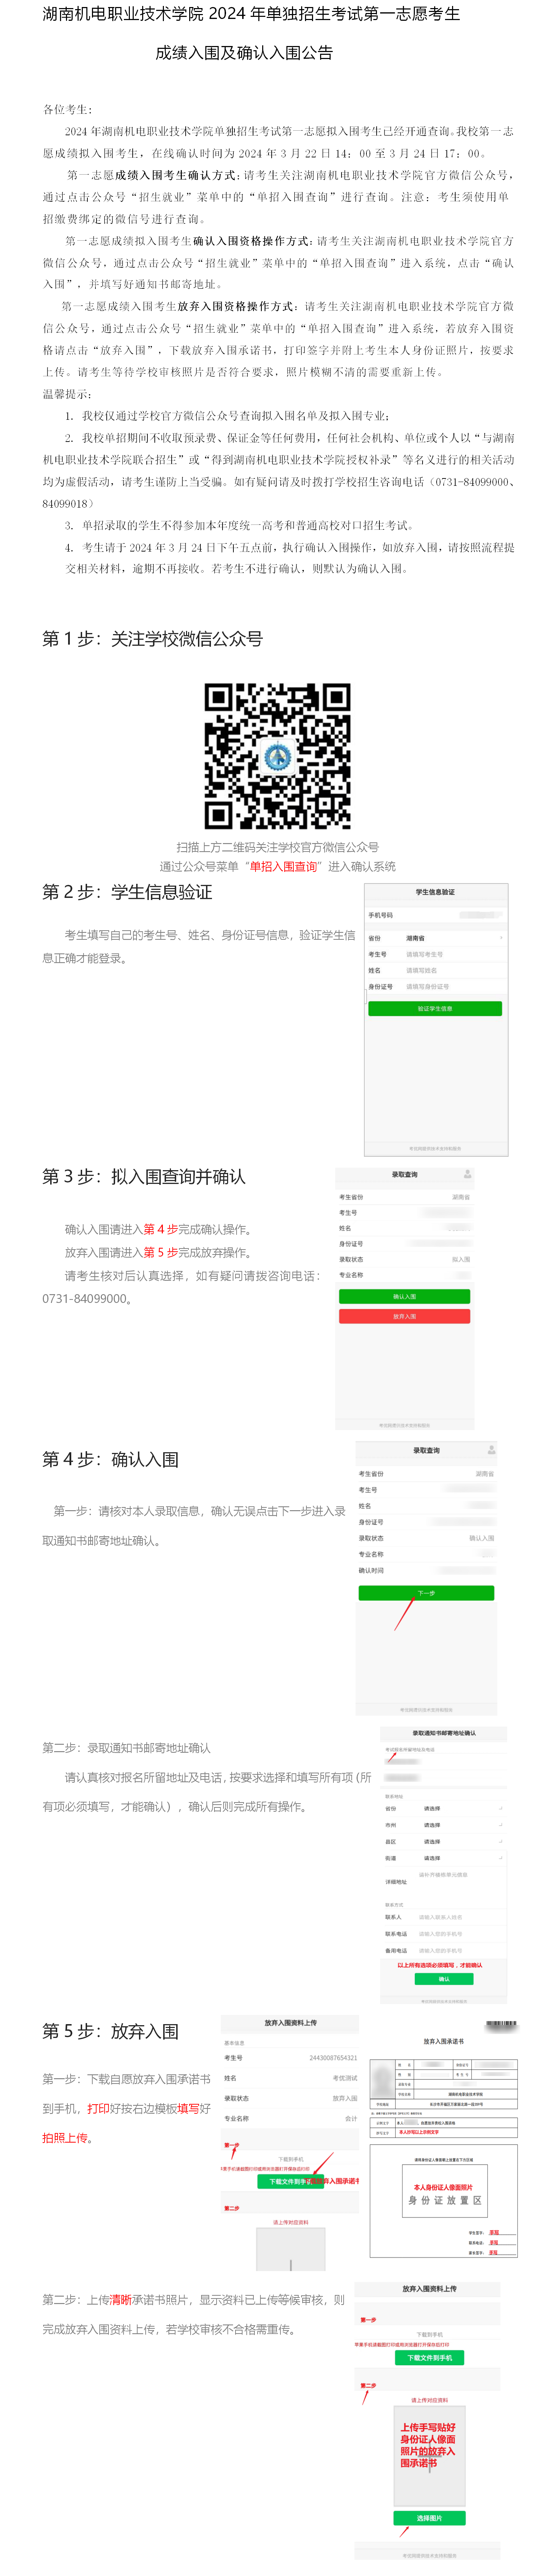 2024新莆京app电子游戏入围确认操作指南(直接确认，放弃上传承诺书）最新确认版0322.png